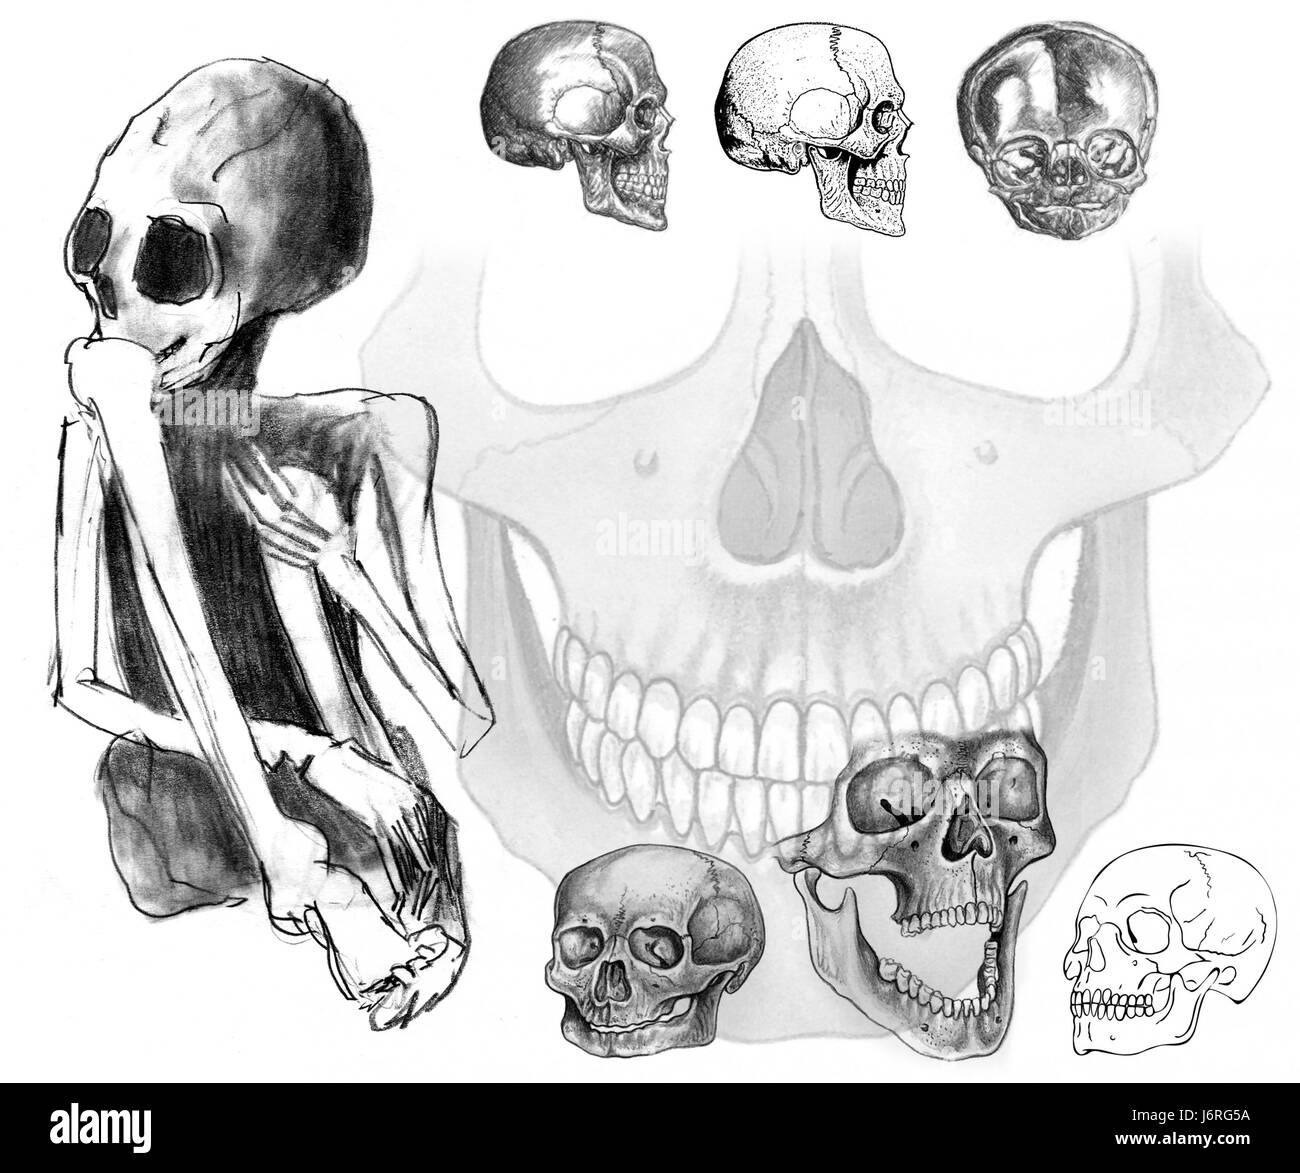 skull scary creepy halloween spooky backdrop background drawing skull scary  Stock Photo - Alamy